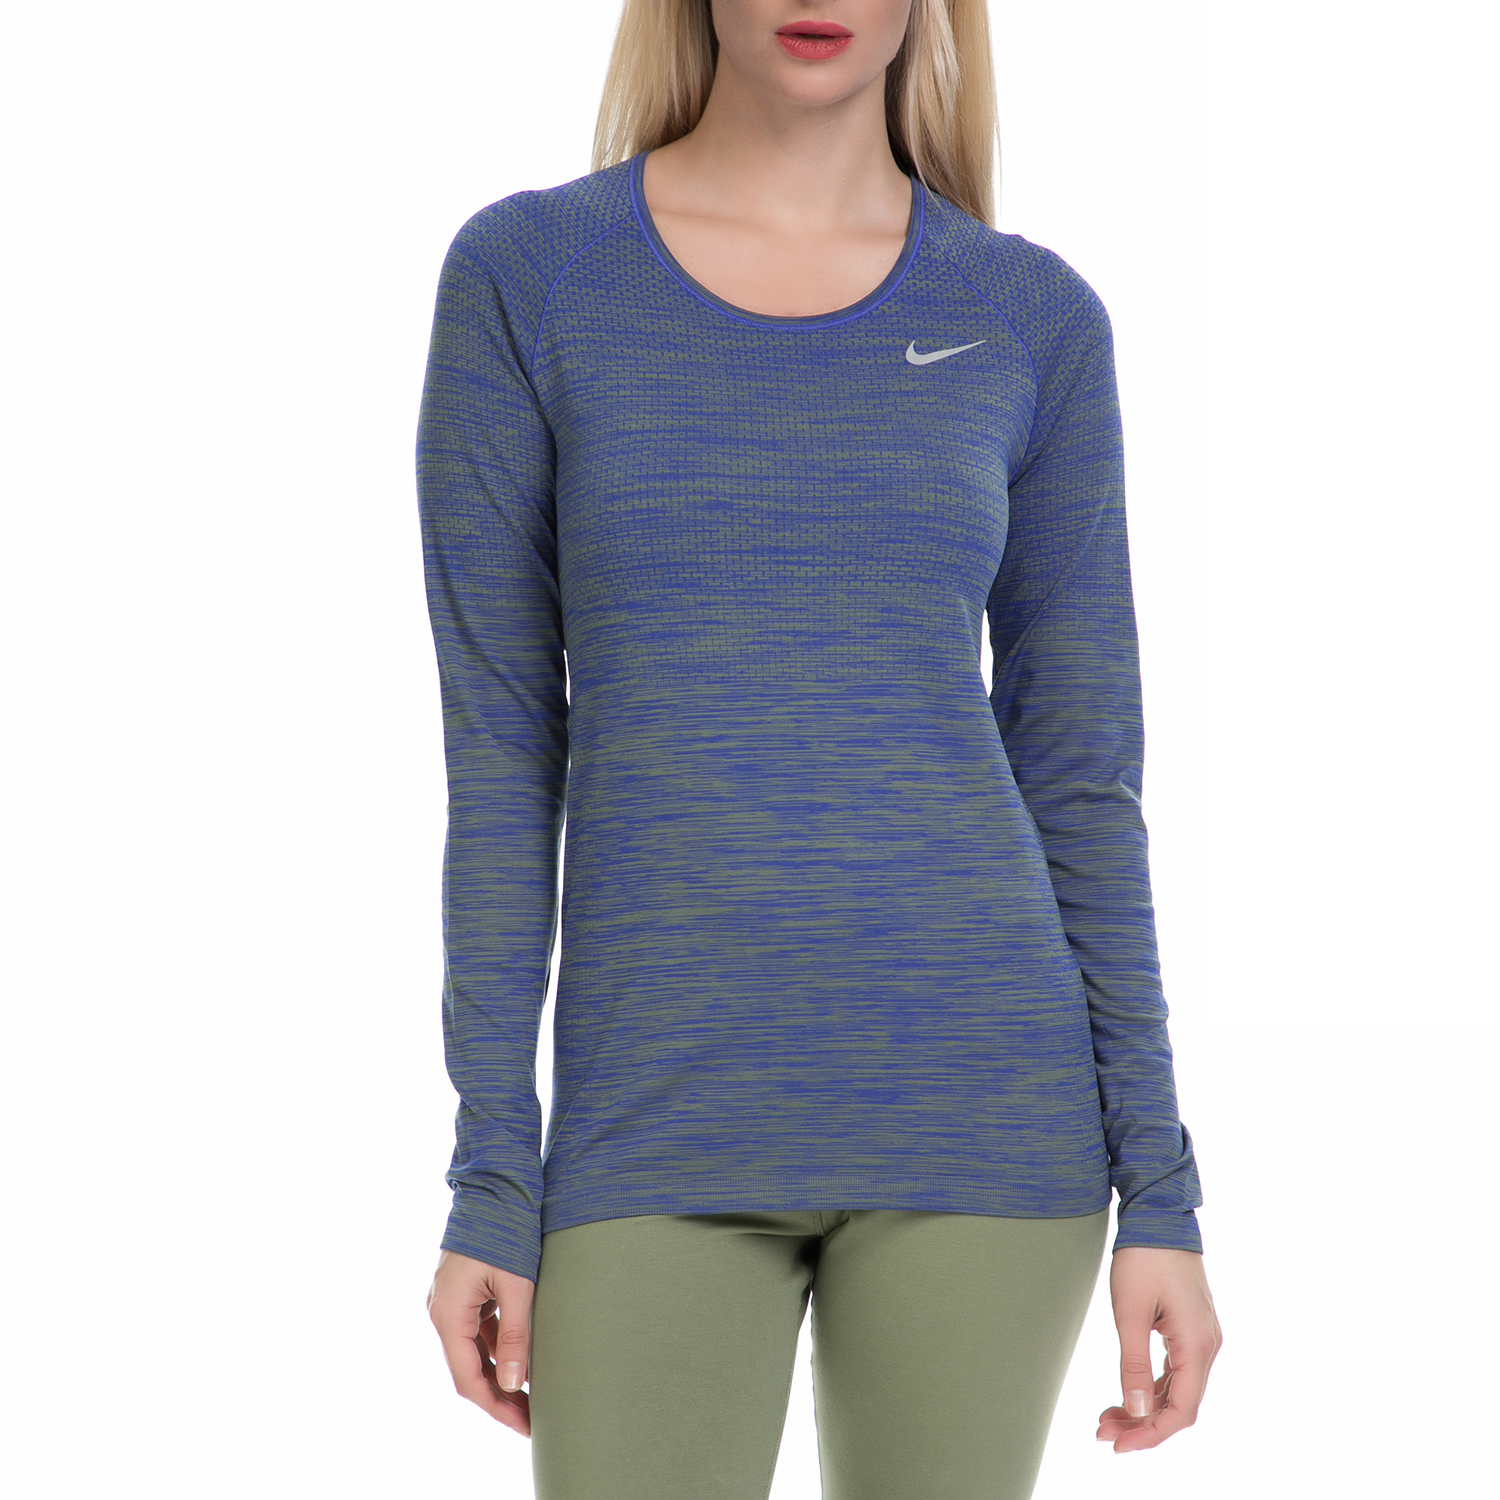 Γυναικεία/Ρούχα/Αθλητικά/Φούτερ-Μακρυμάνικα NIKE - Γυναικεία αθλητική μπλούζα NΙKΕ DF KNIT TOP μπλε-πράσινη